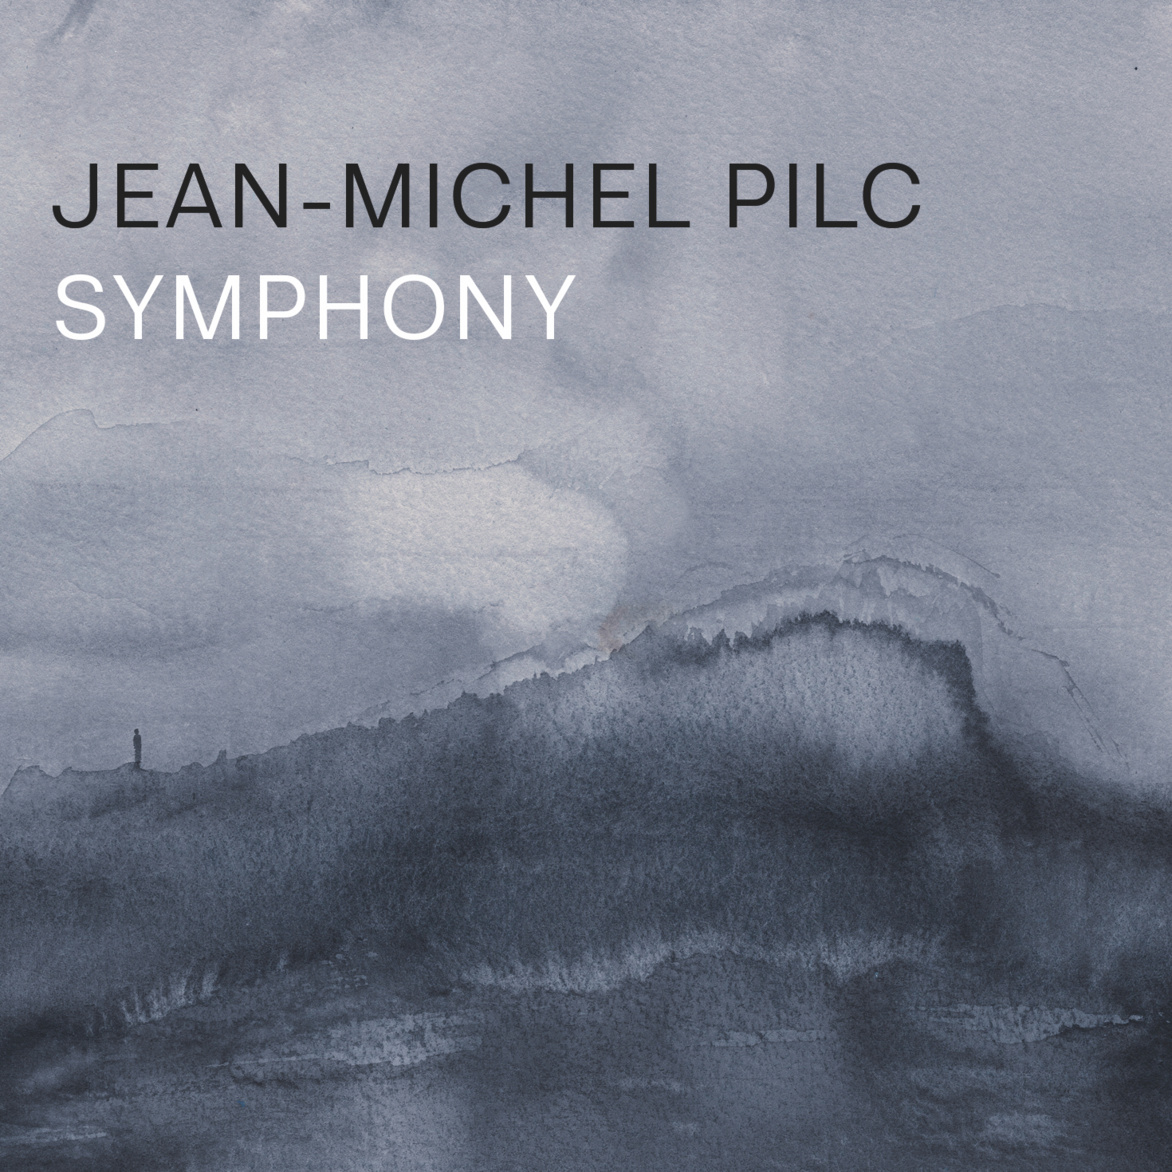 Jean-Michel Pilc au sommet de son inspiration jazz avec Symphony